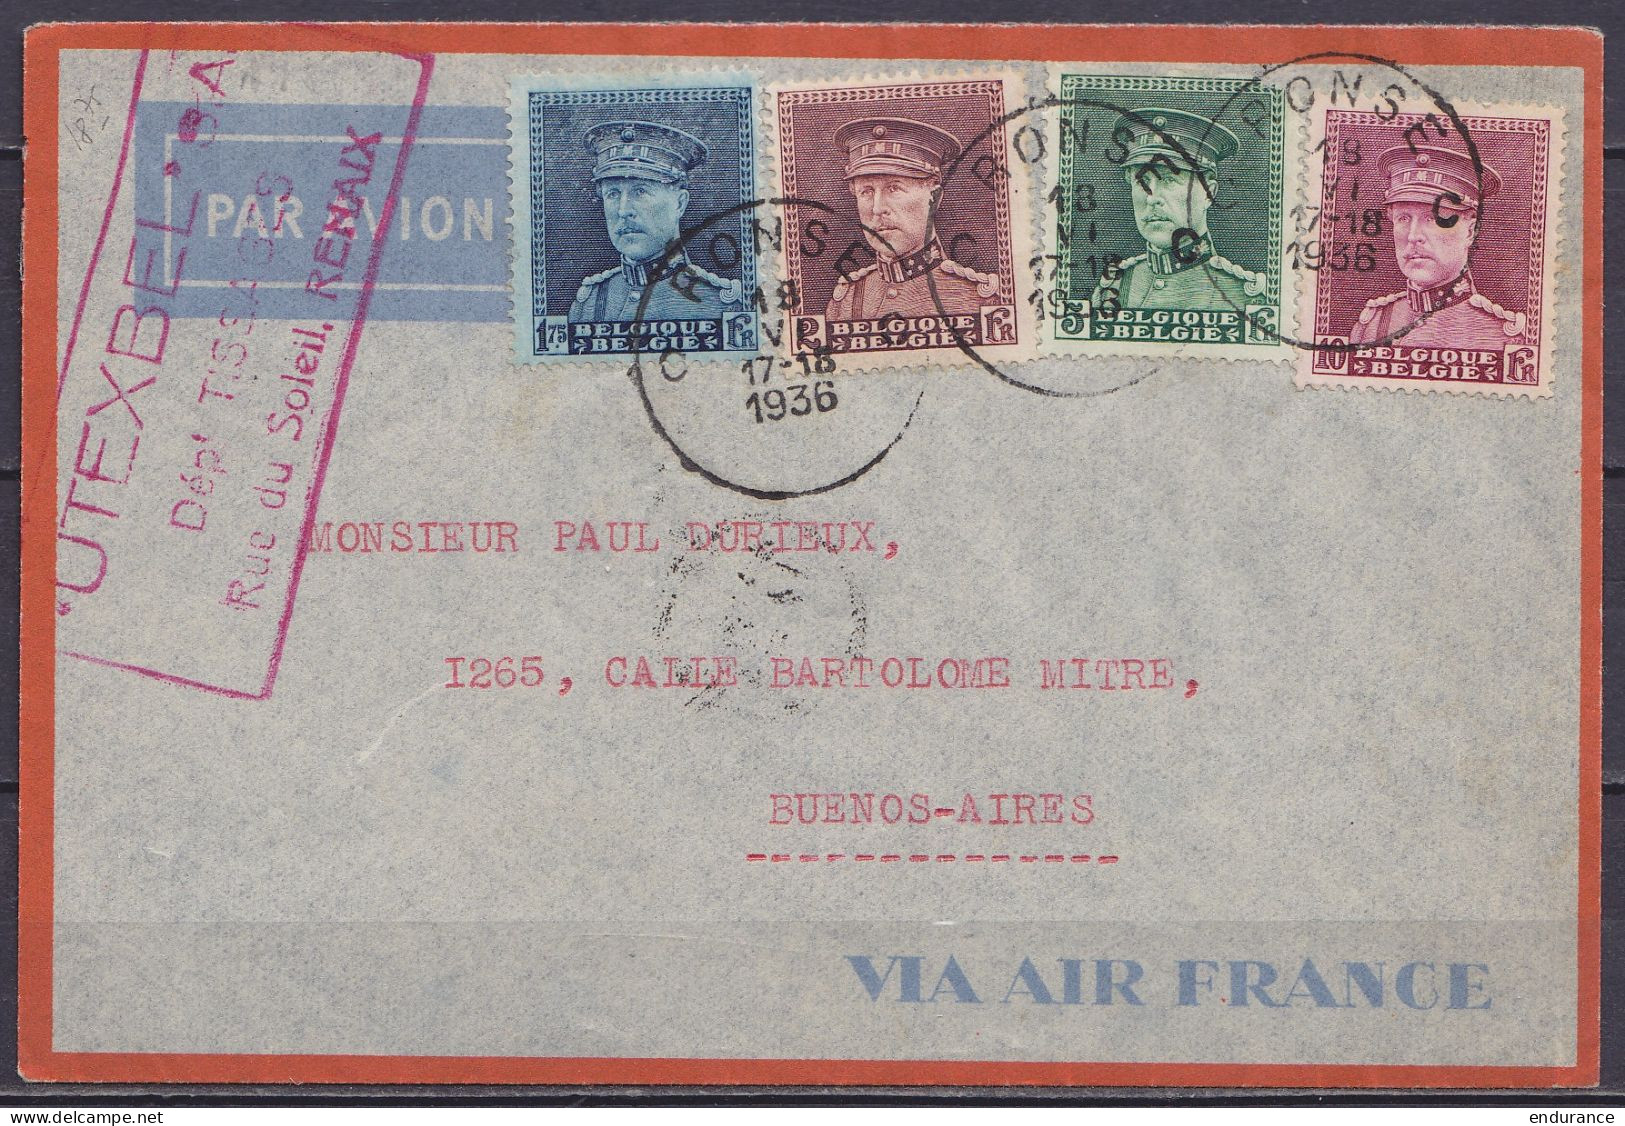 L. Par Avion Affr. N°320+321+323+324 Càd RONSE C /18 VI 1936 Pour BUENOS AIRES Argentine / Enveloppe "VIA AIR France" (a - 1931-1934 Mütze (Képi)